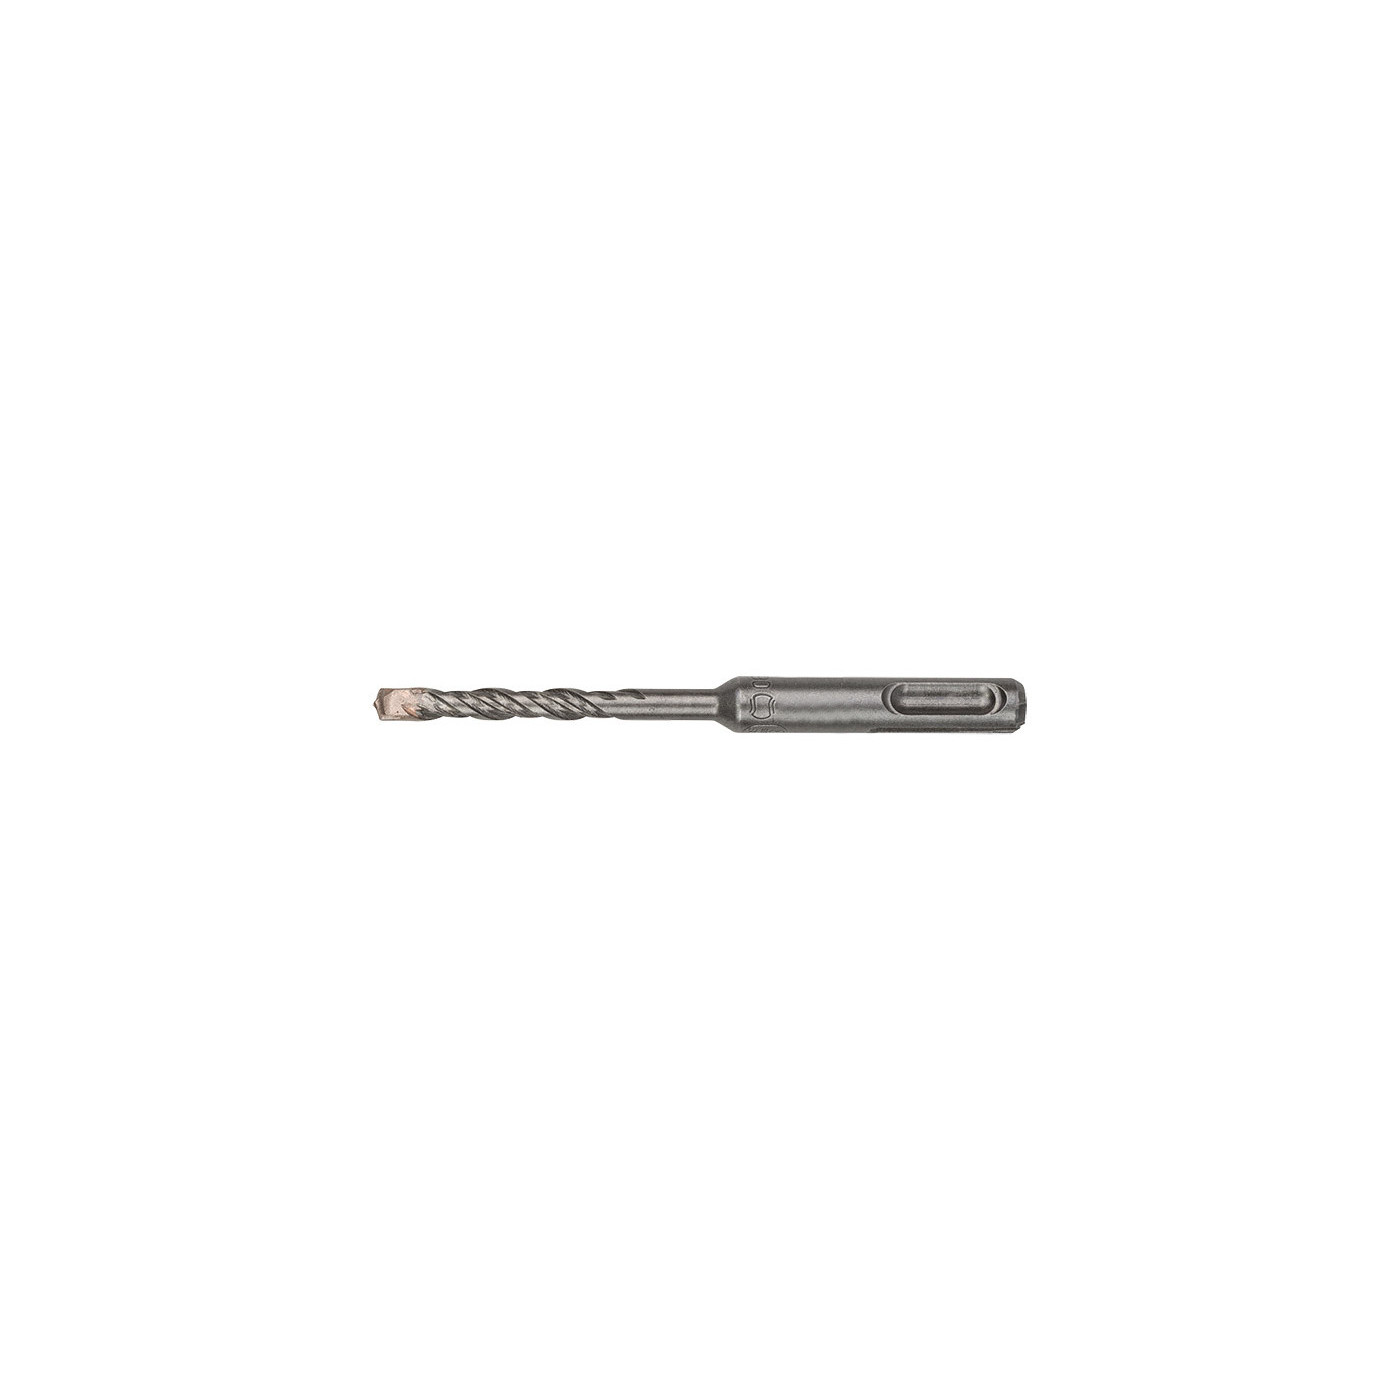 SDS PLUS hammer drill bit (6x110 mm)